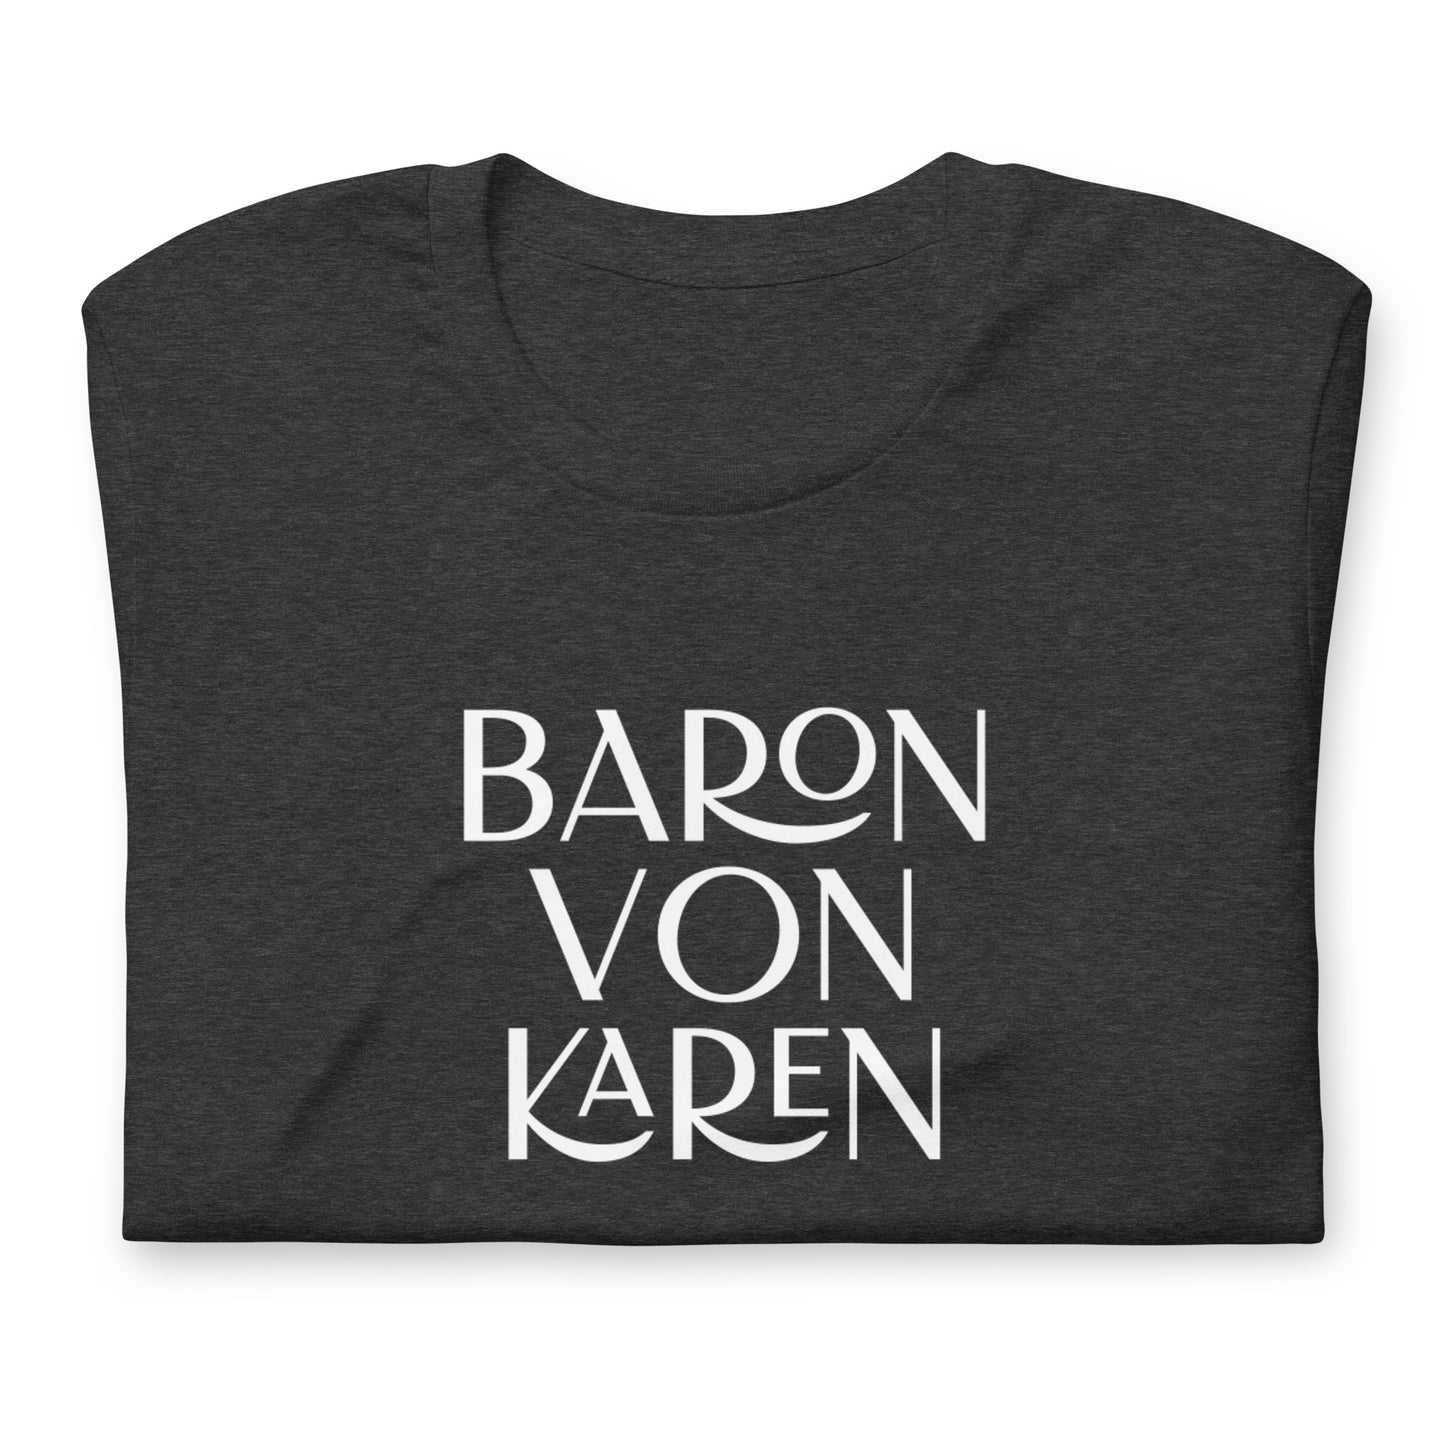 Baron von Karen